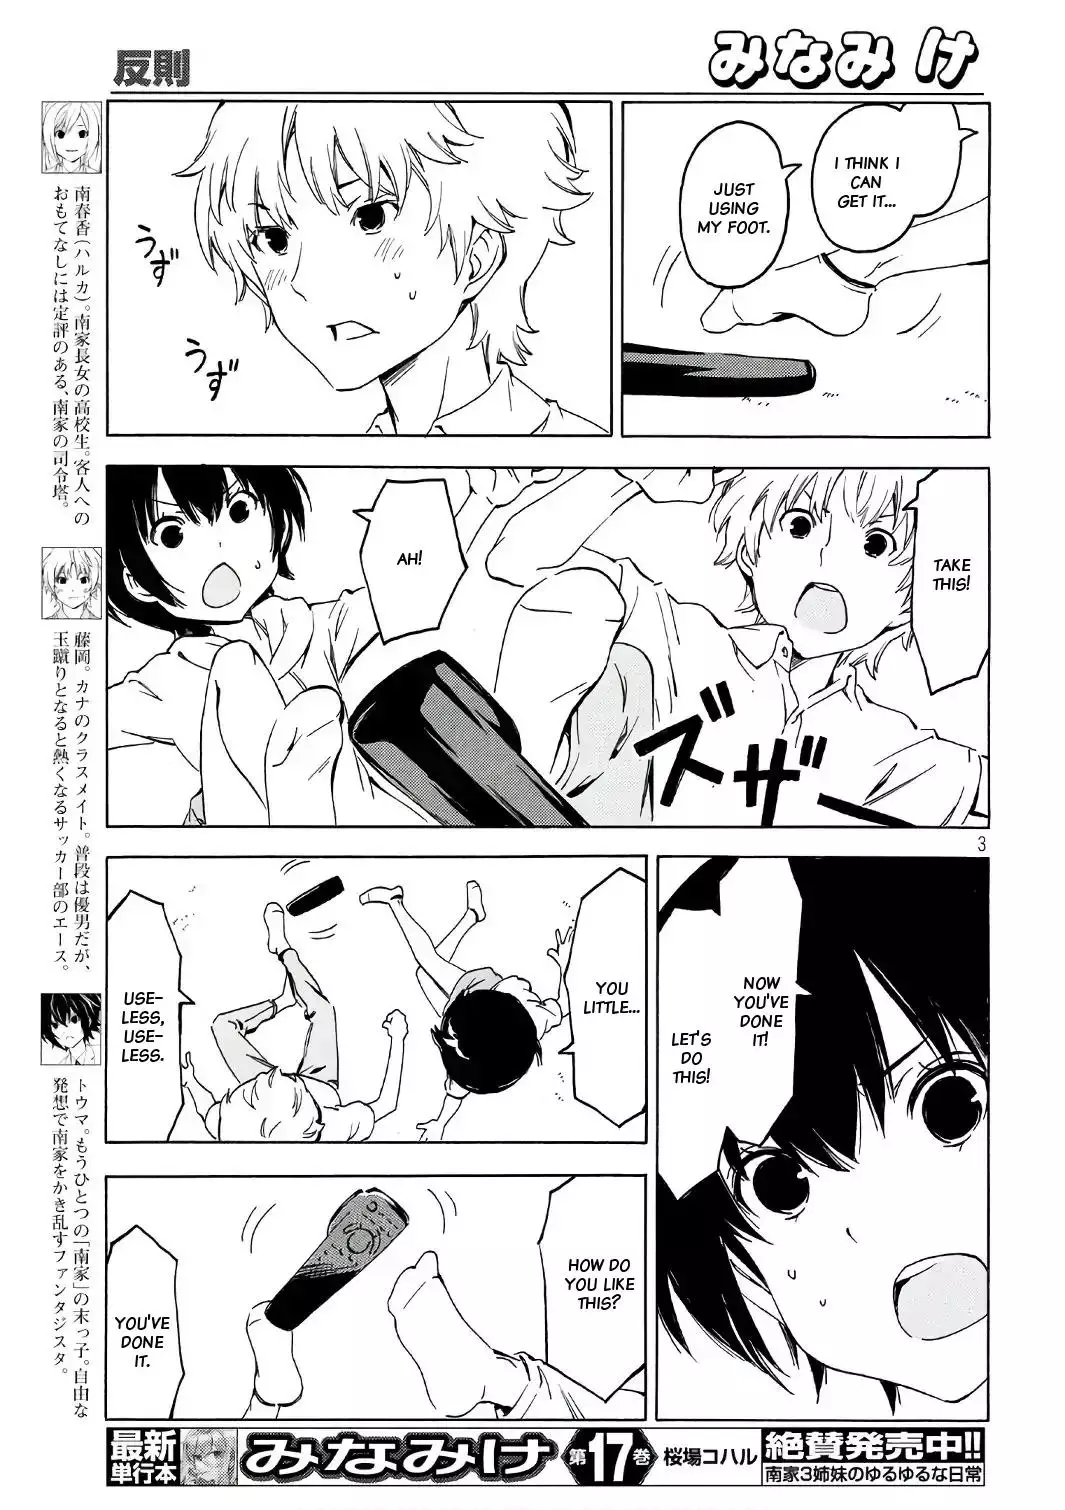 Minami-ke - 343 page 2